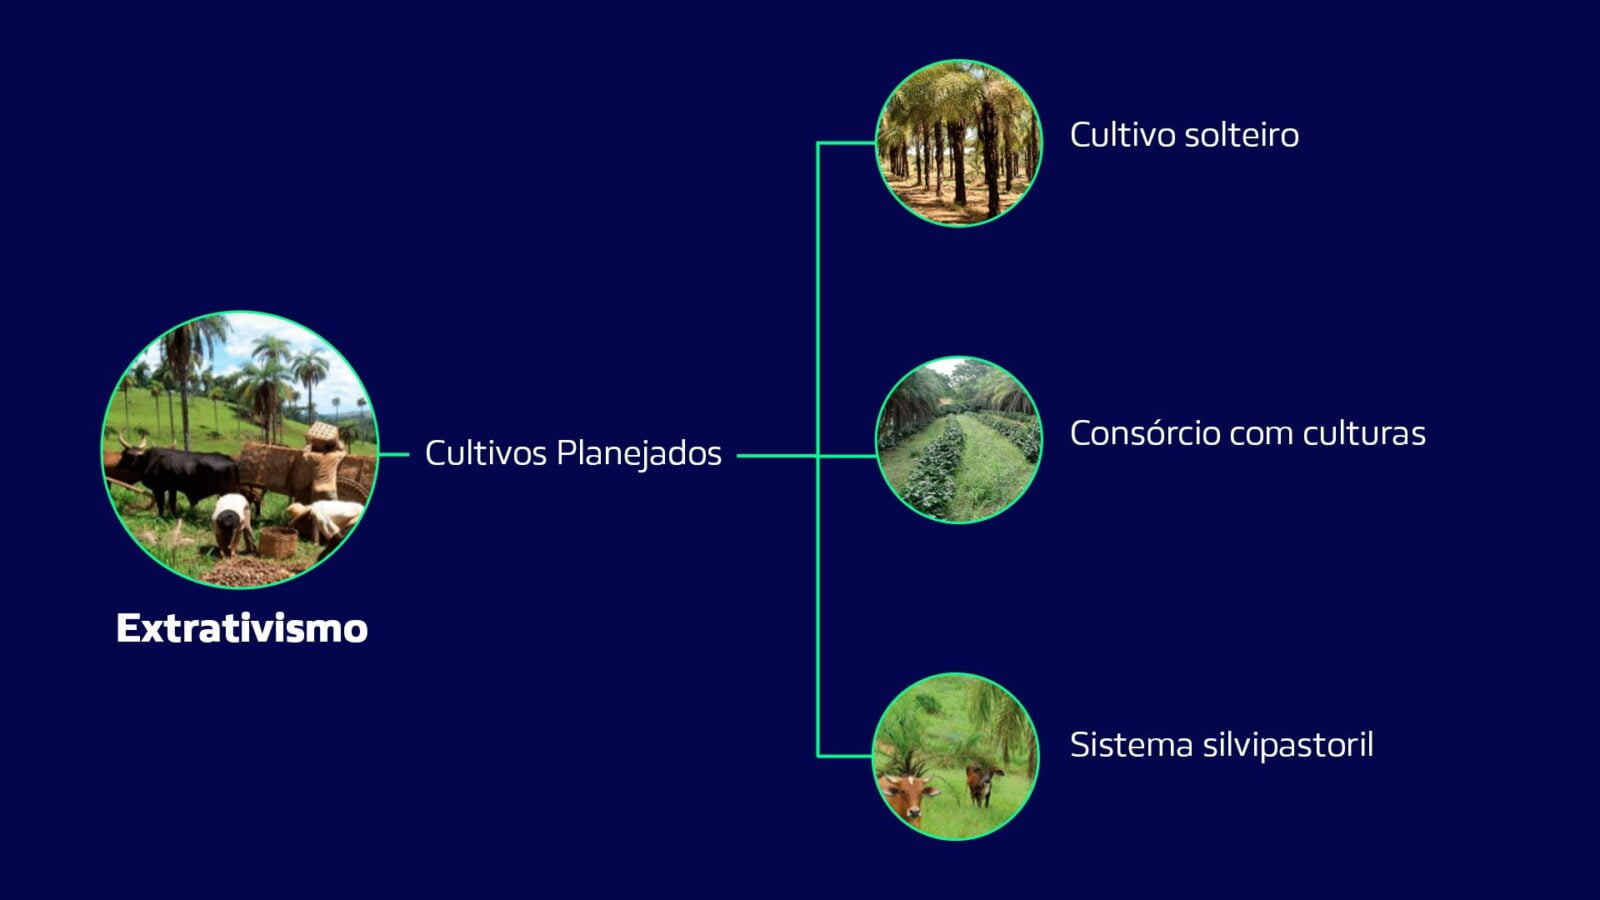 Imagem mostra formas de exploração da macaúba, sendo eles o uso do extrativismo, como cultivo solteiro, consórcio com culturas e sistema silvipastoril